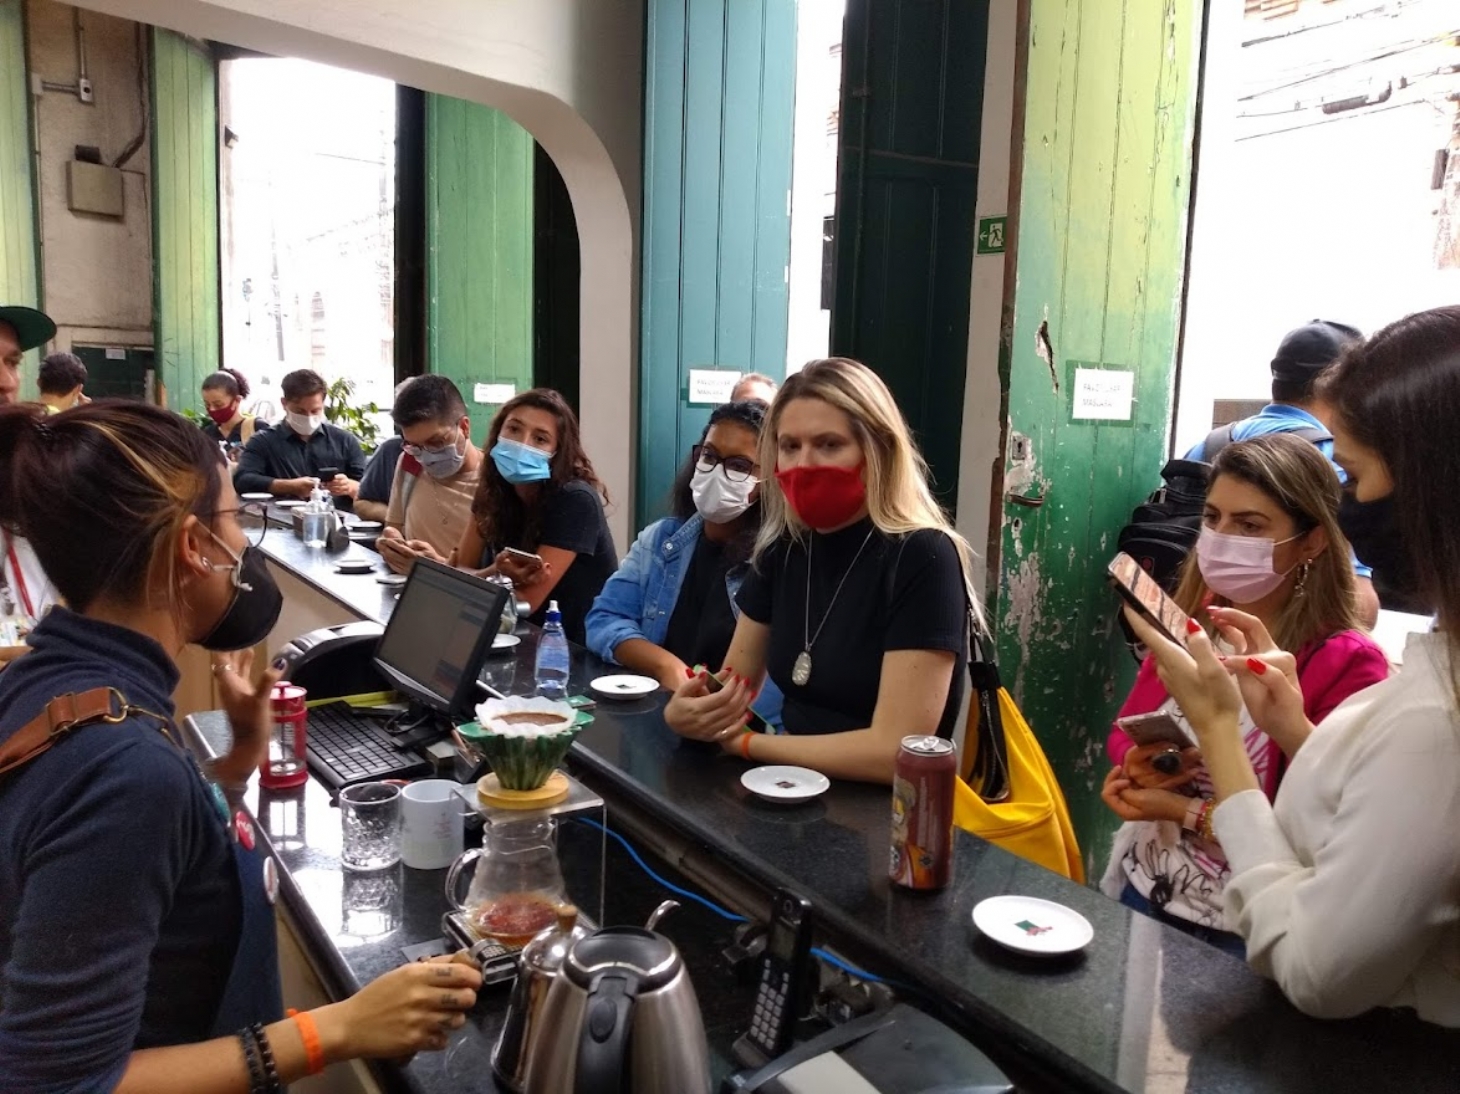 Rastros do café: um roteiro de aromas e sensações em Santos | Jornal da Orla